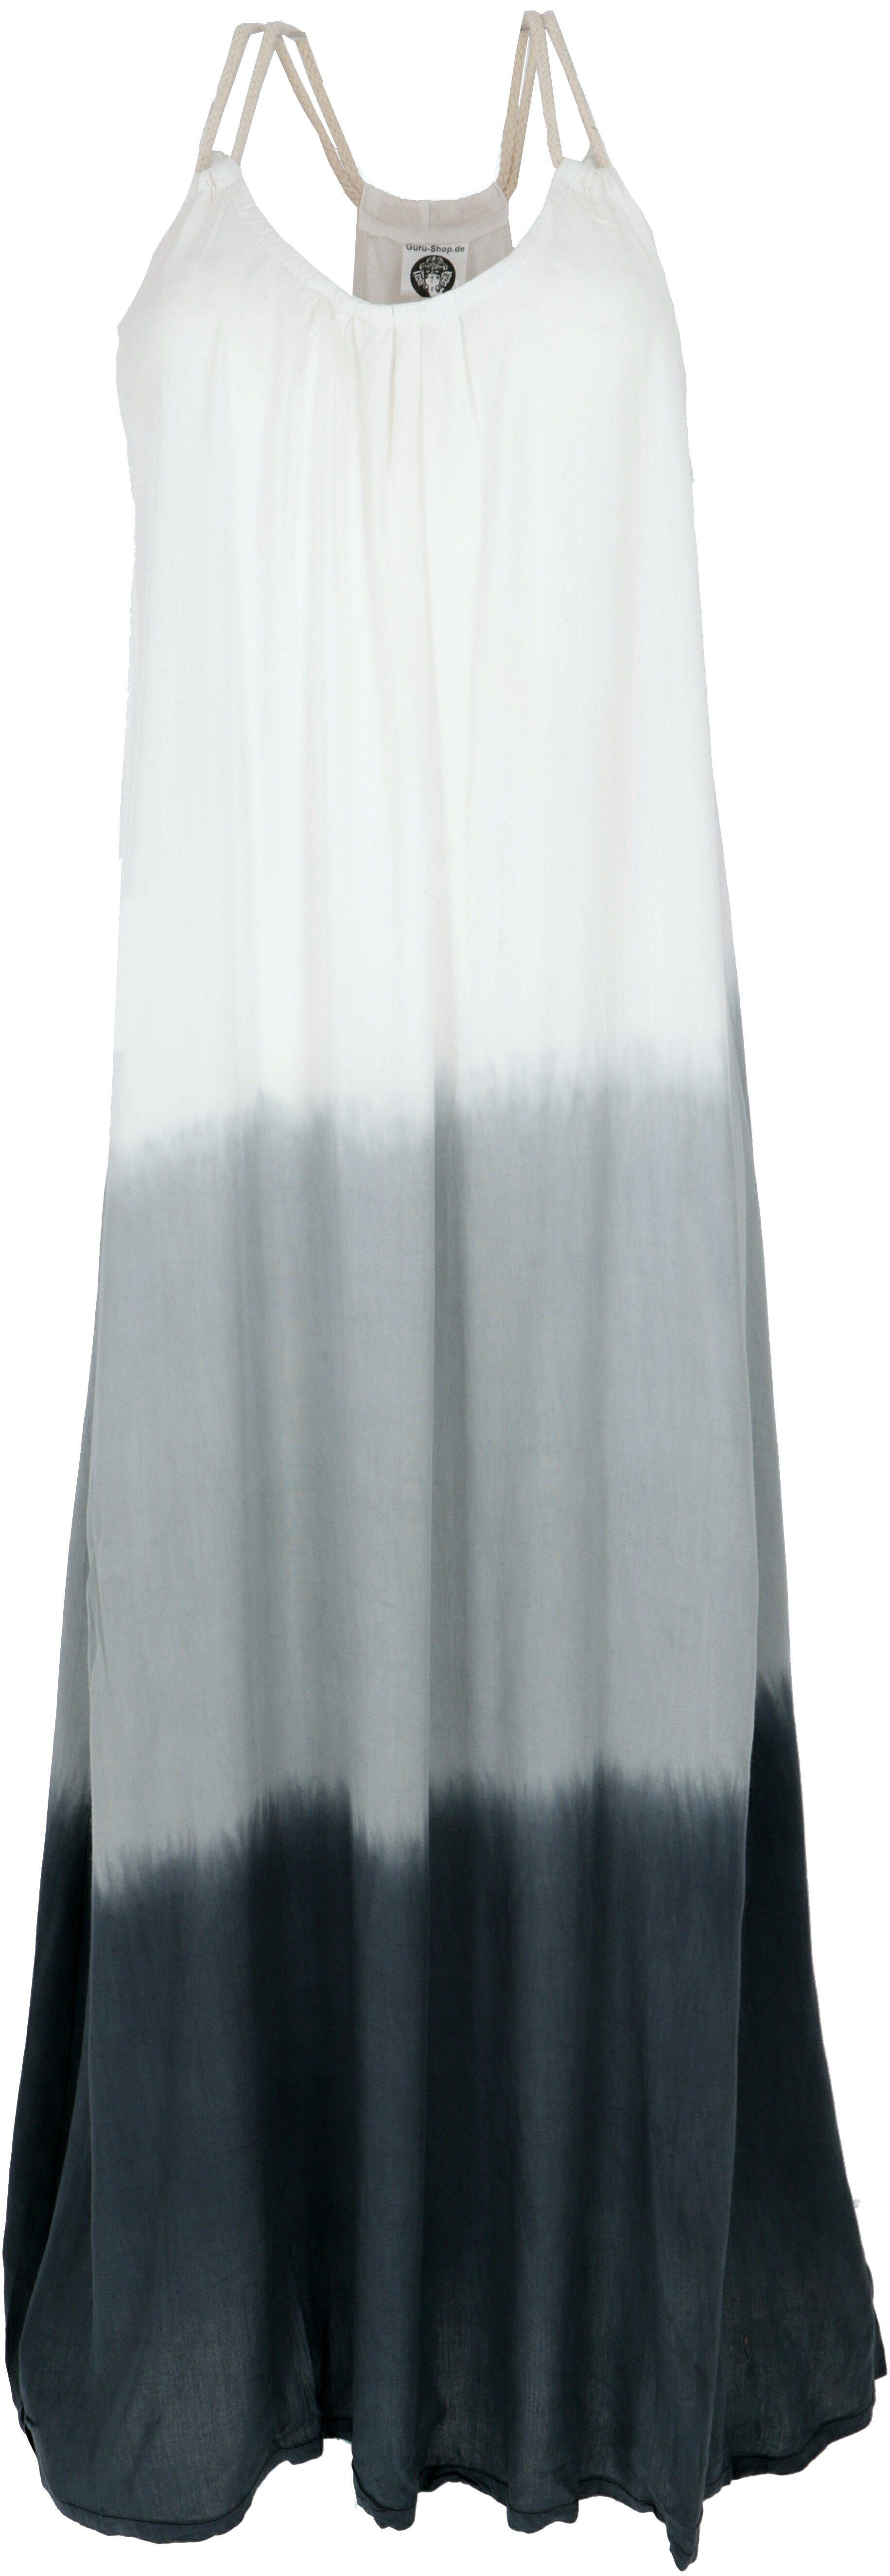 Batikkleid, Strandkleid, Midikleid -.. Guru-Shop Schmales Sommerkleid schwarz/weiß Bekleidung alternative